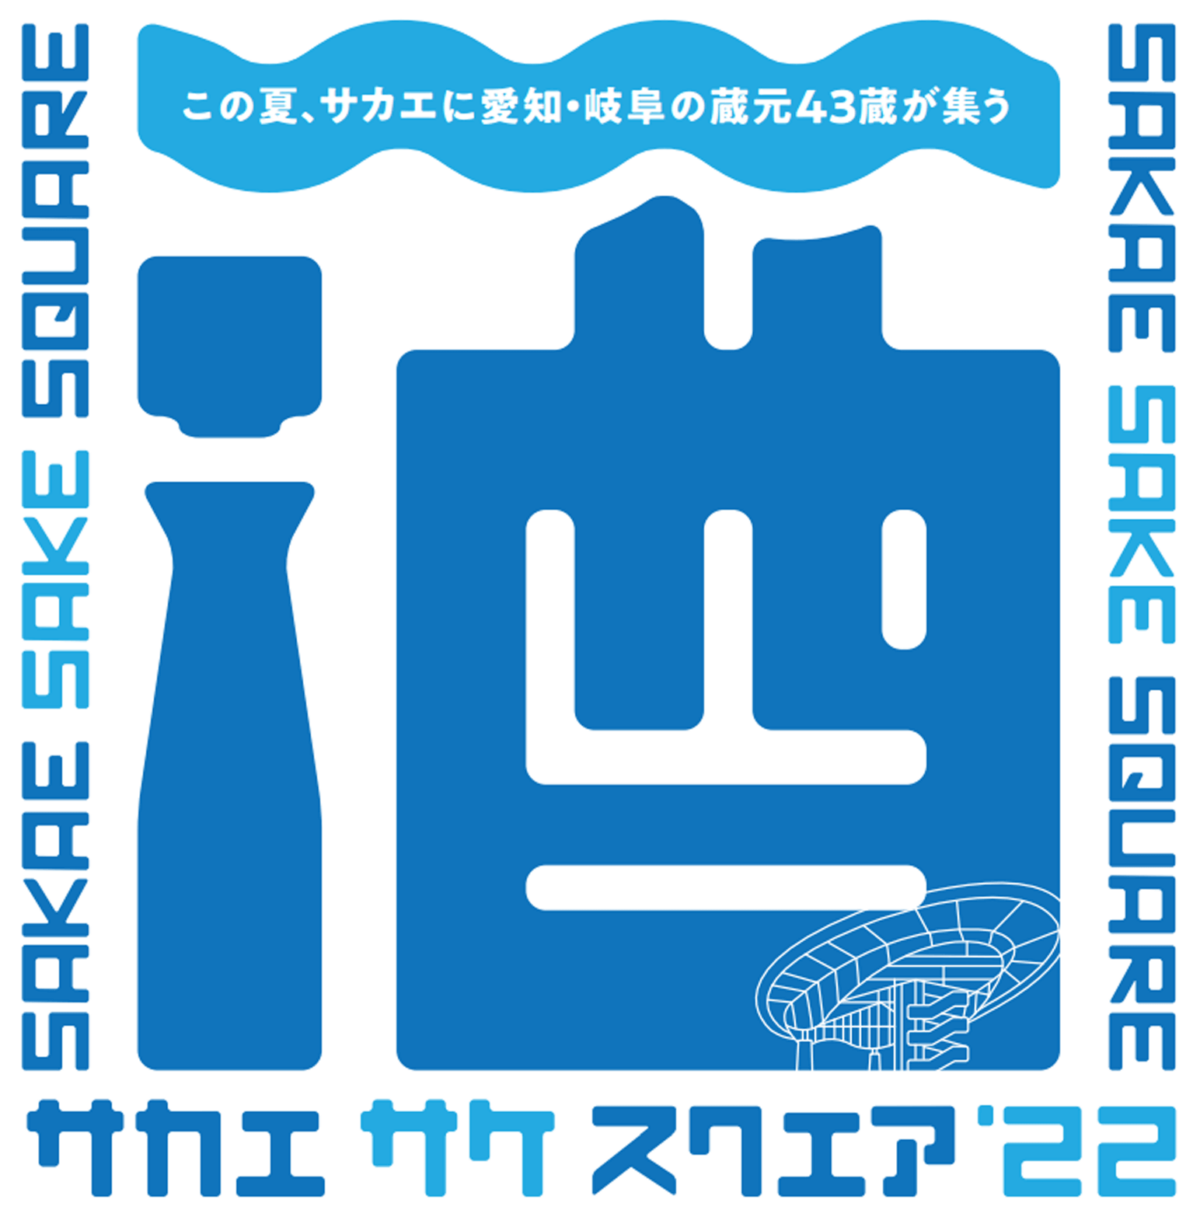 この夏、サカエに愛知・岐阜の蔵元43蔵が集う SAKAE SAKE SQUARE 2022～サカエ サケ スクエア 2022～